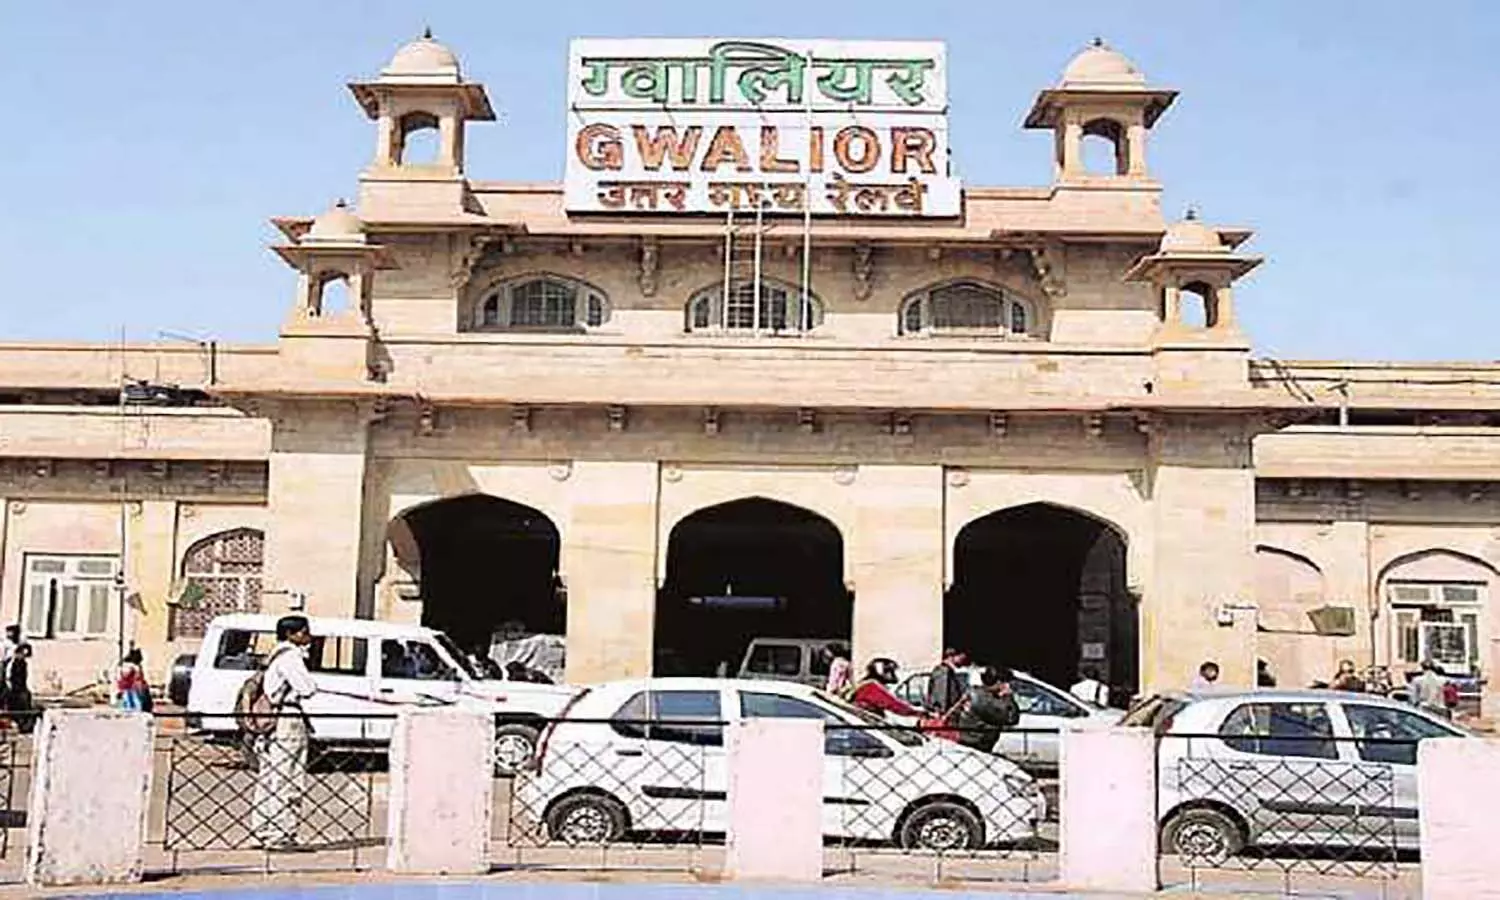 एमपी के ग्वालियर रेलवे स्टेशन का होगा कायाकल्प, हैदराबाद की कंपनी को जिम्मा